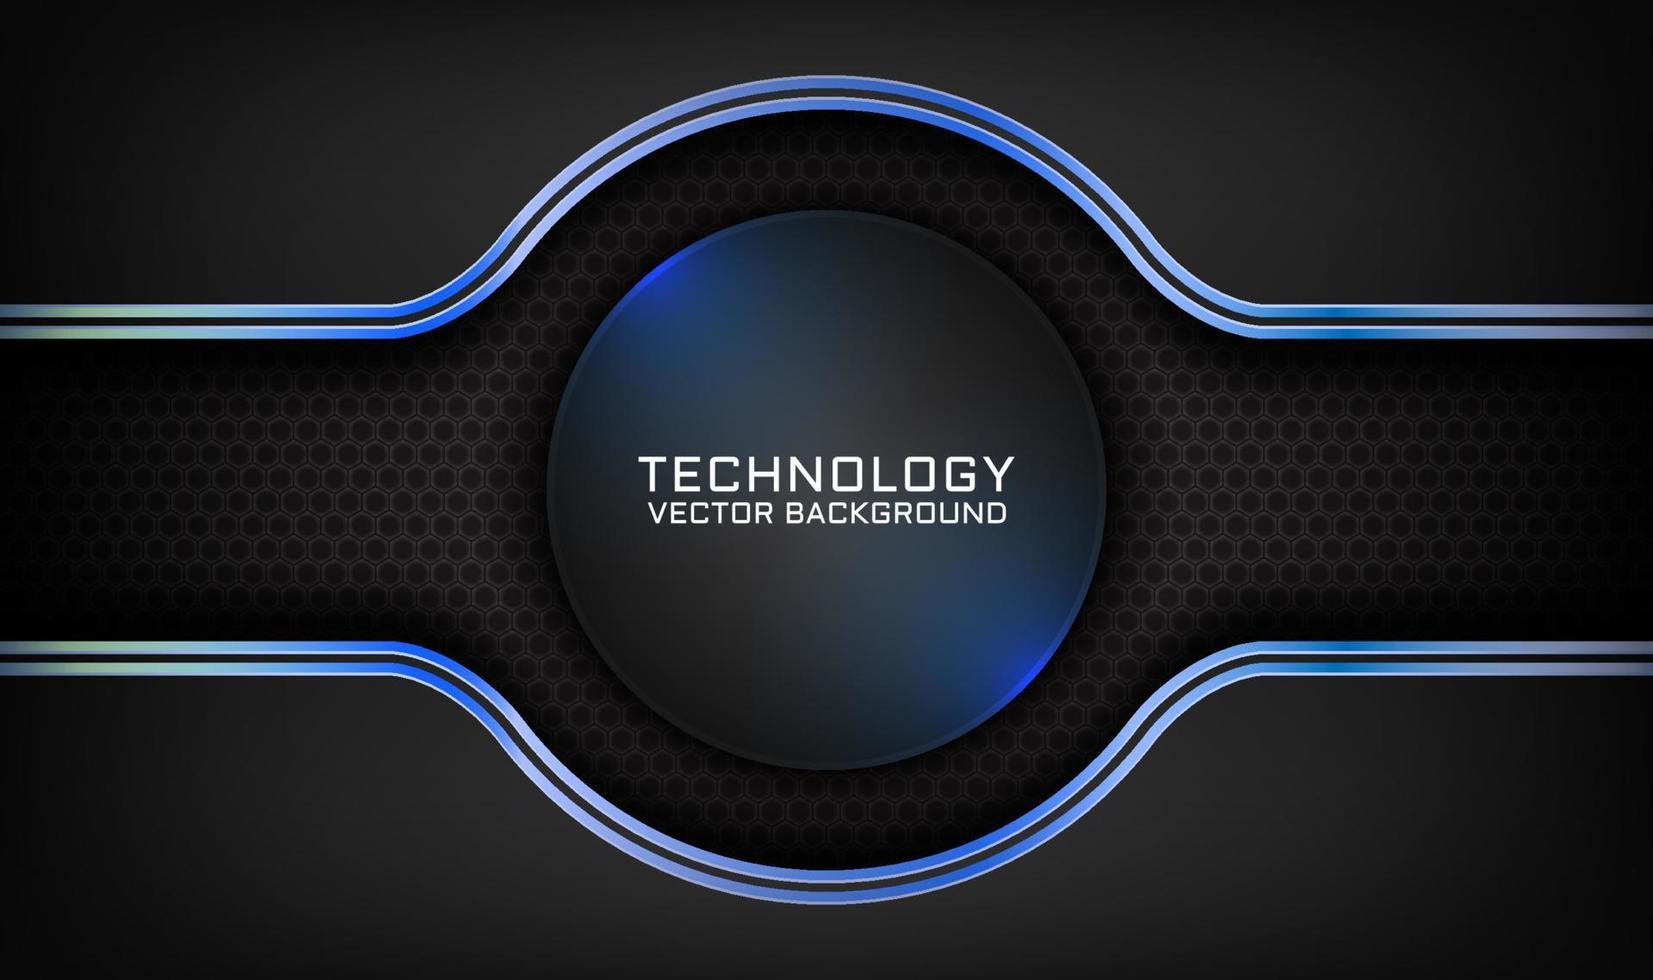 3D svart teknologi abstrakt bakgrund överlappande lager på mörkt utrymme med blå ljus cirkel effekt dekoration. grafiskt designelement framtida stilkoncept för banner, flygblad, omslag eller målsida vektor